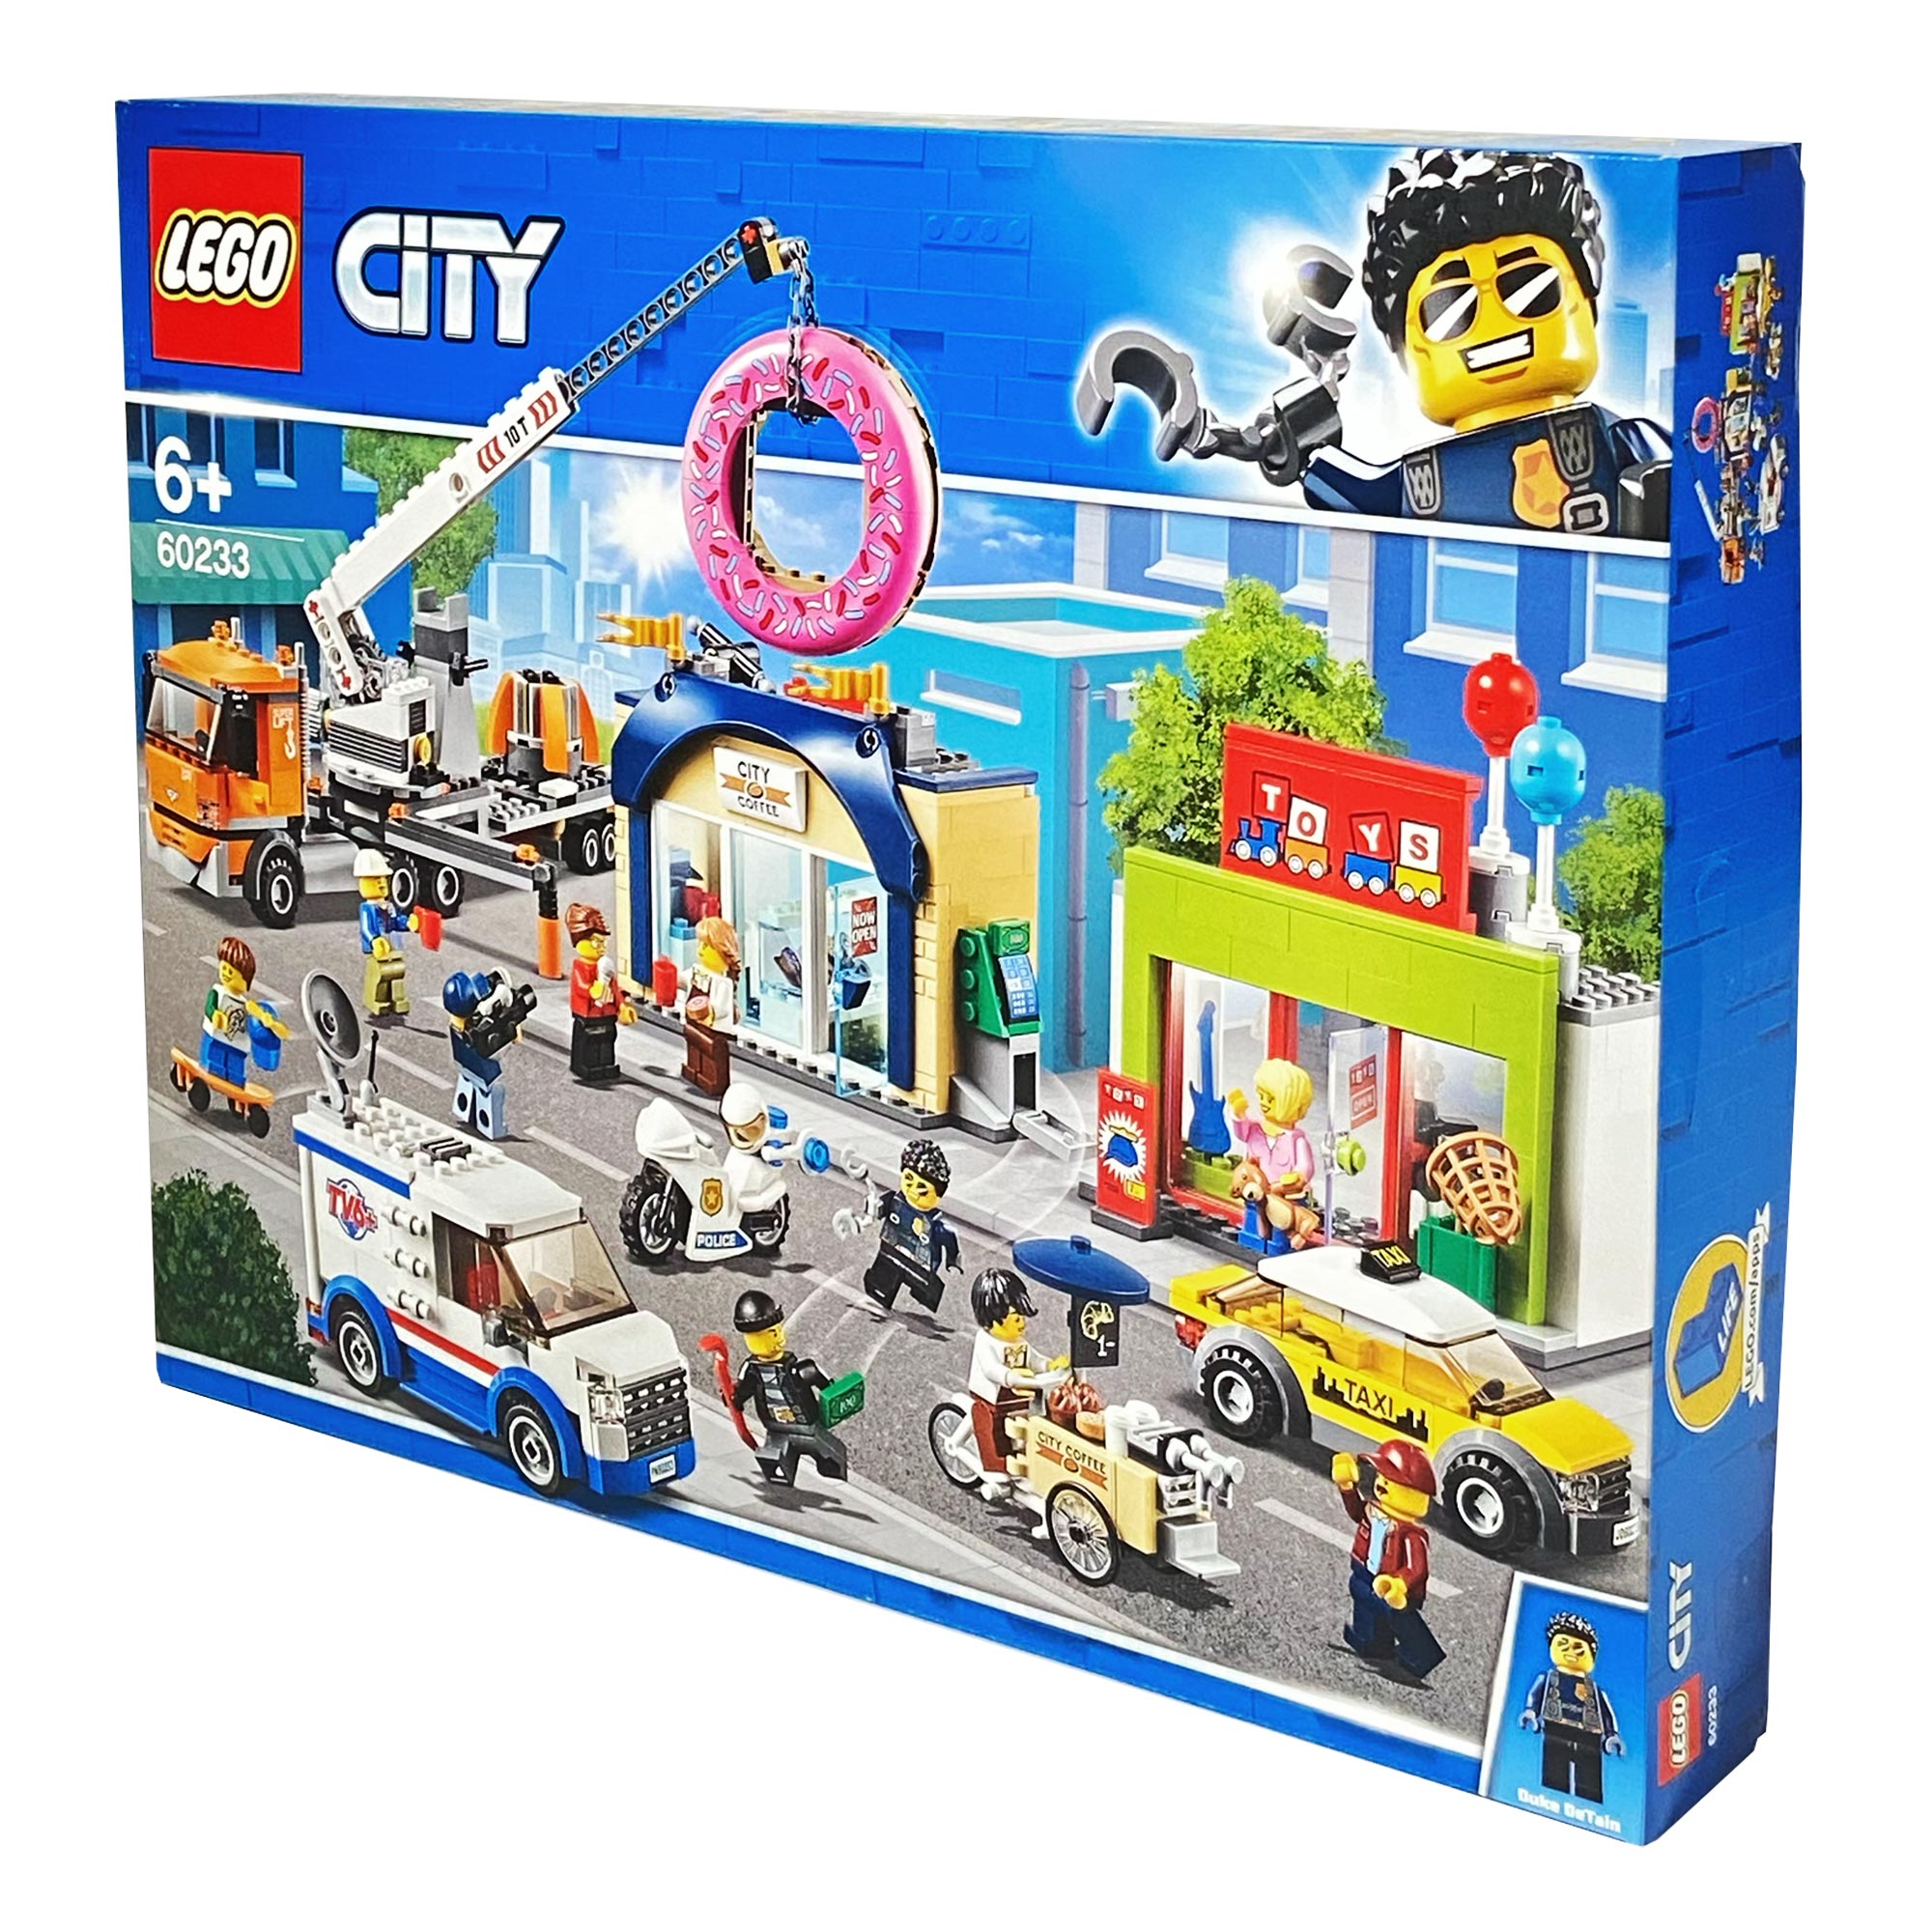 LEGO® City 60233 Große Donut-Shop-Eröffnung